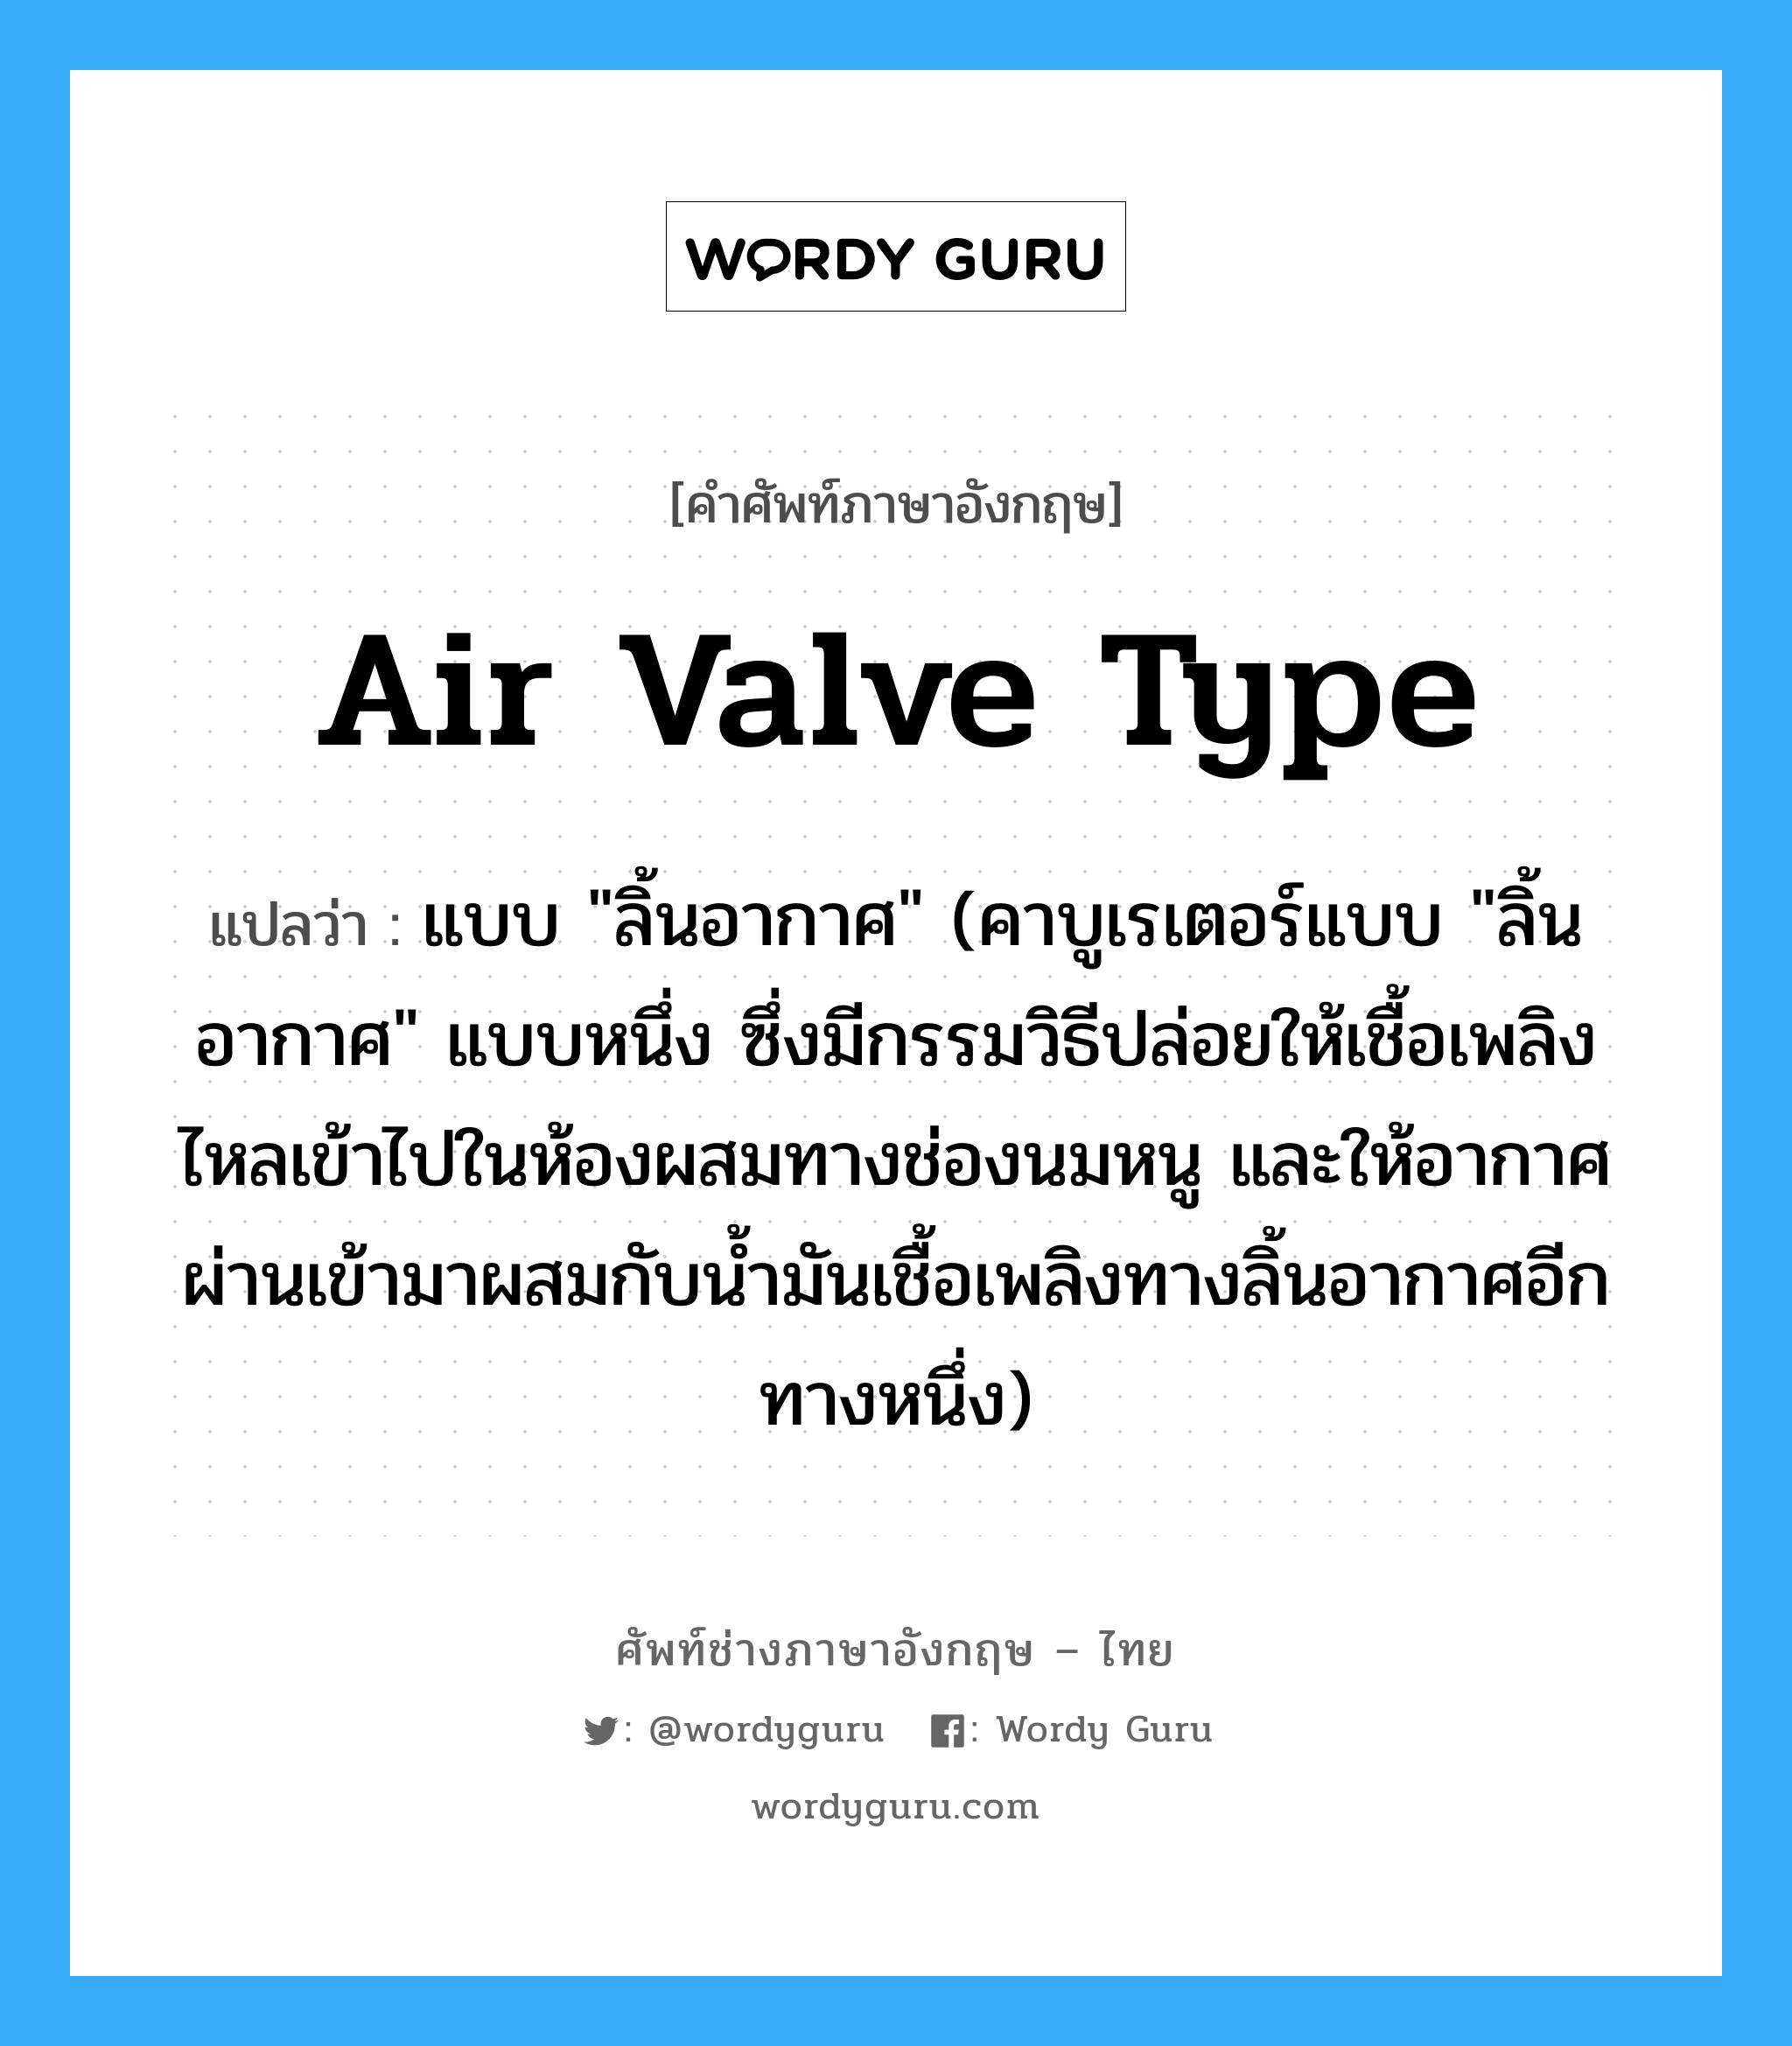 air valve type แปลว่า?, คำศัพท์ช่างภาษาอังกฤษ - ไทย air valve type คำศัพท์ภาษาอังกฤษ air valve type แปลว่า แบบ "ลิ้นอากาศ" (คาบูเรเตอร์แบบ "ลิ้นอากาศ" แบบหนึ่ง ซึ่งมีกรรมวิธีปล่อยให้เชื้อเพลิงไหลเข้าไปในห้องผสมทางช่องนมหนู และให้อากาศผ่านเข้ามาผสมกับน้ำมันเชื้อเพลิงทางลิ้นอากาศอีกทางหนึ่ง)